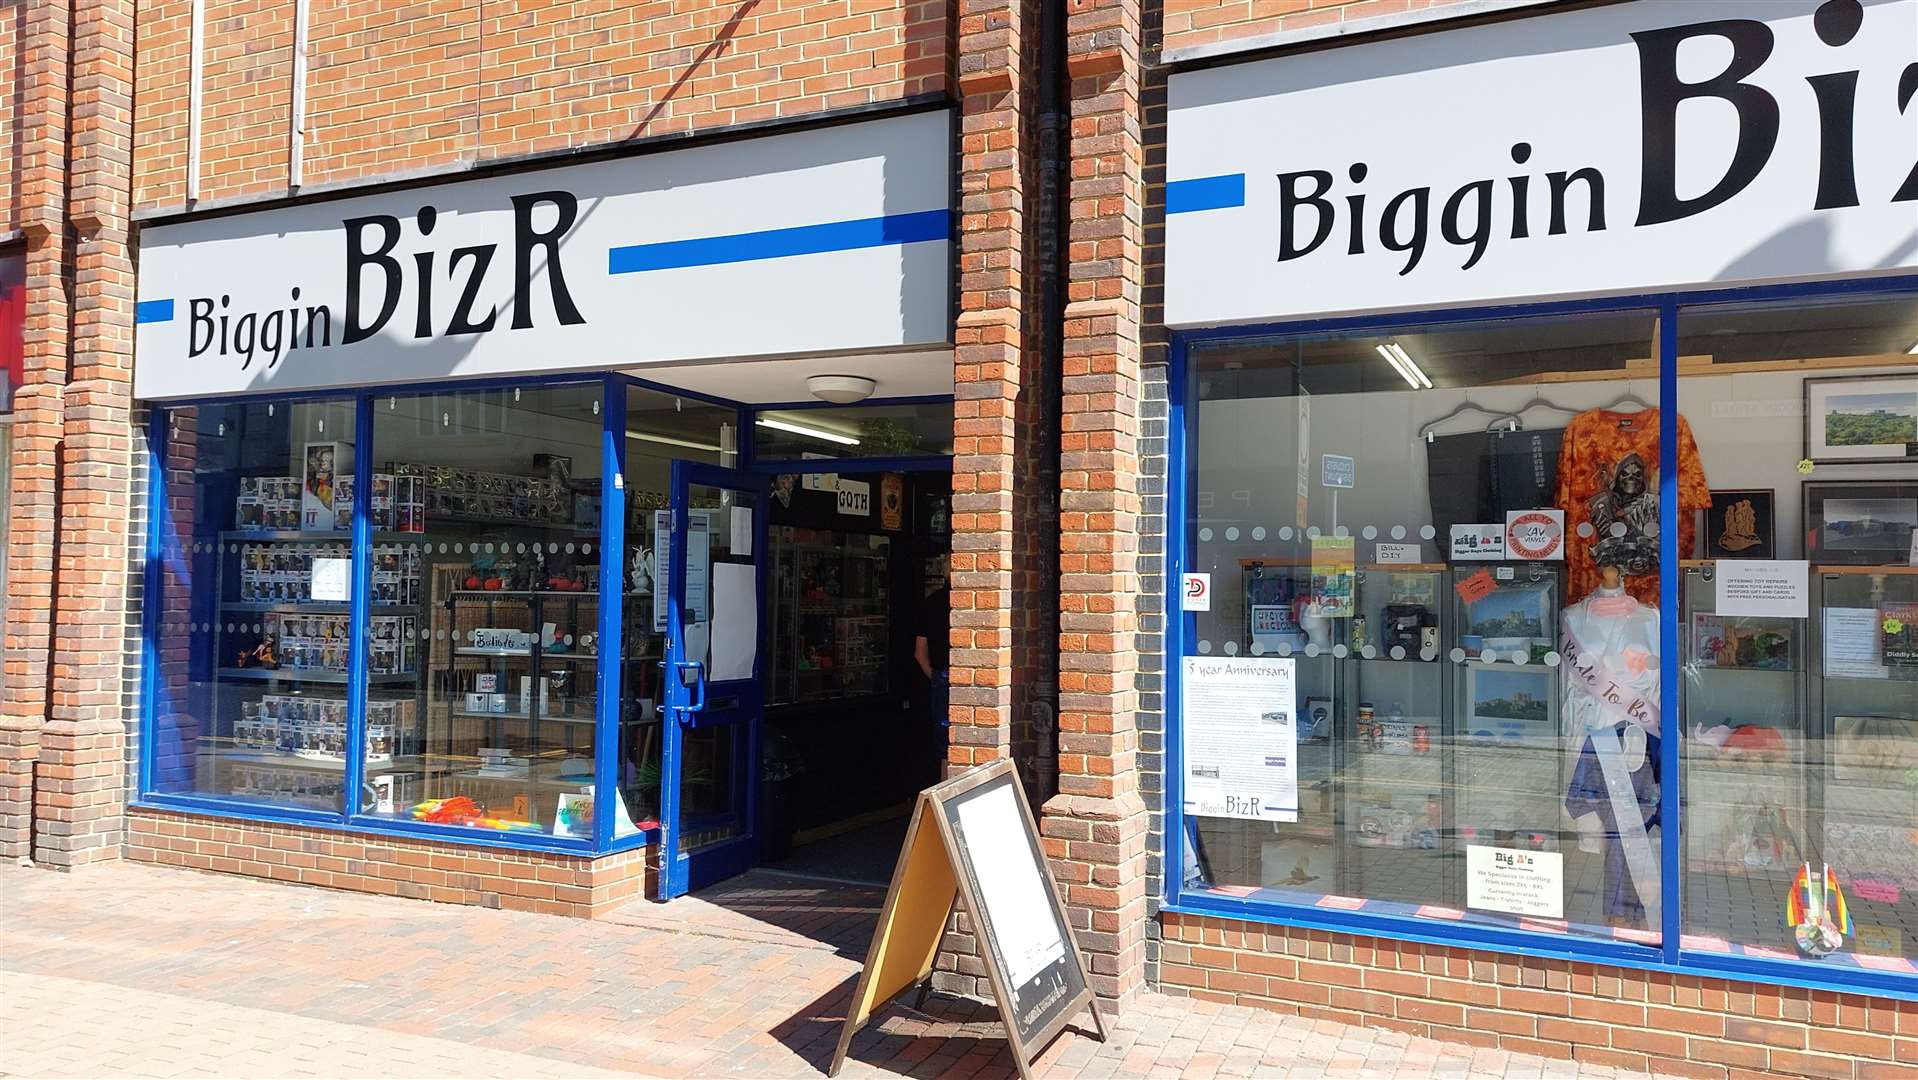 Biggin BizR in Dover town centre